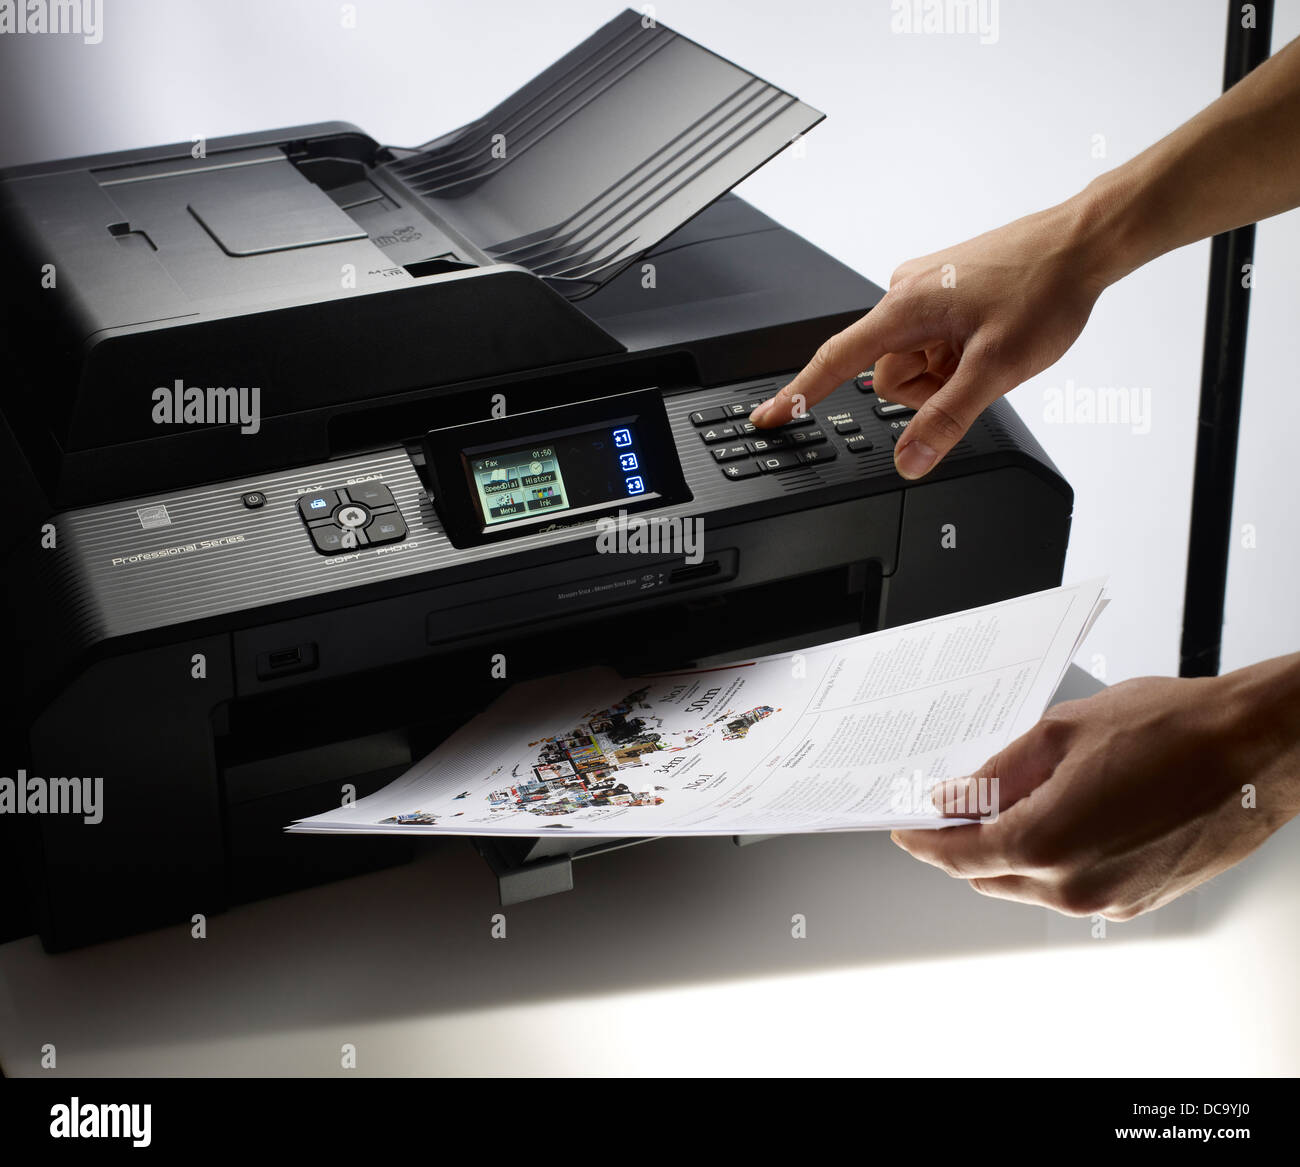 Brother Impresora MFC-J5910DW Impresora fotográfica a color inalámbrica con  escáner, copiadora y fax